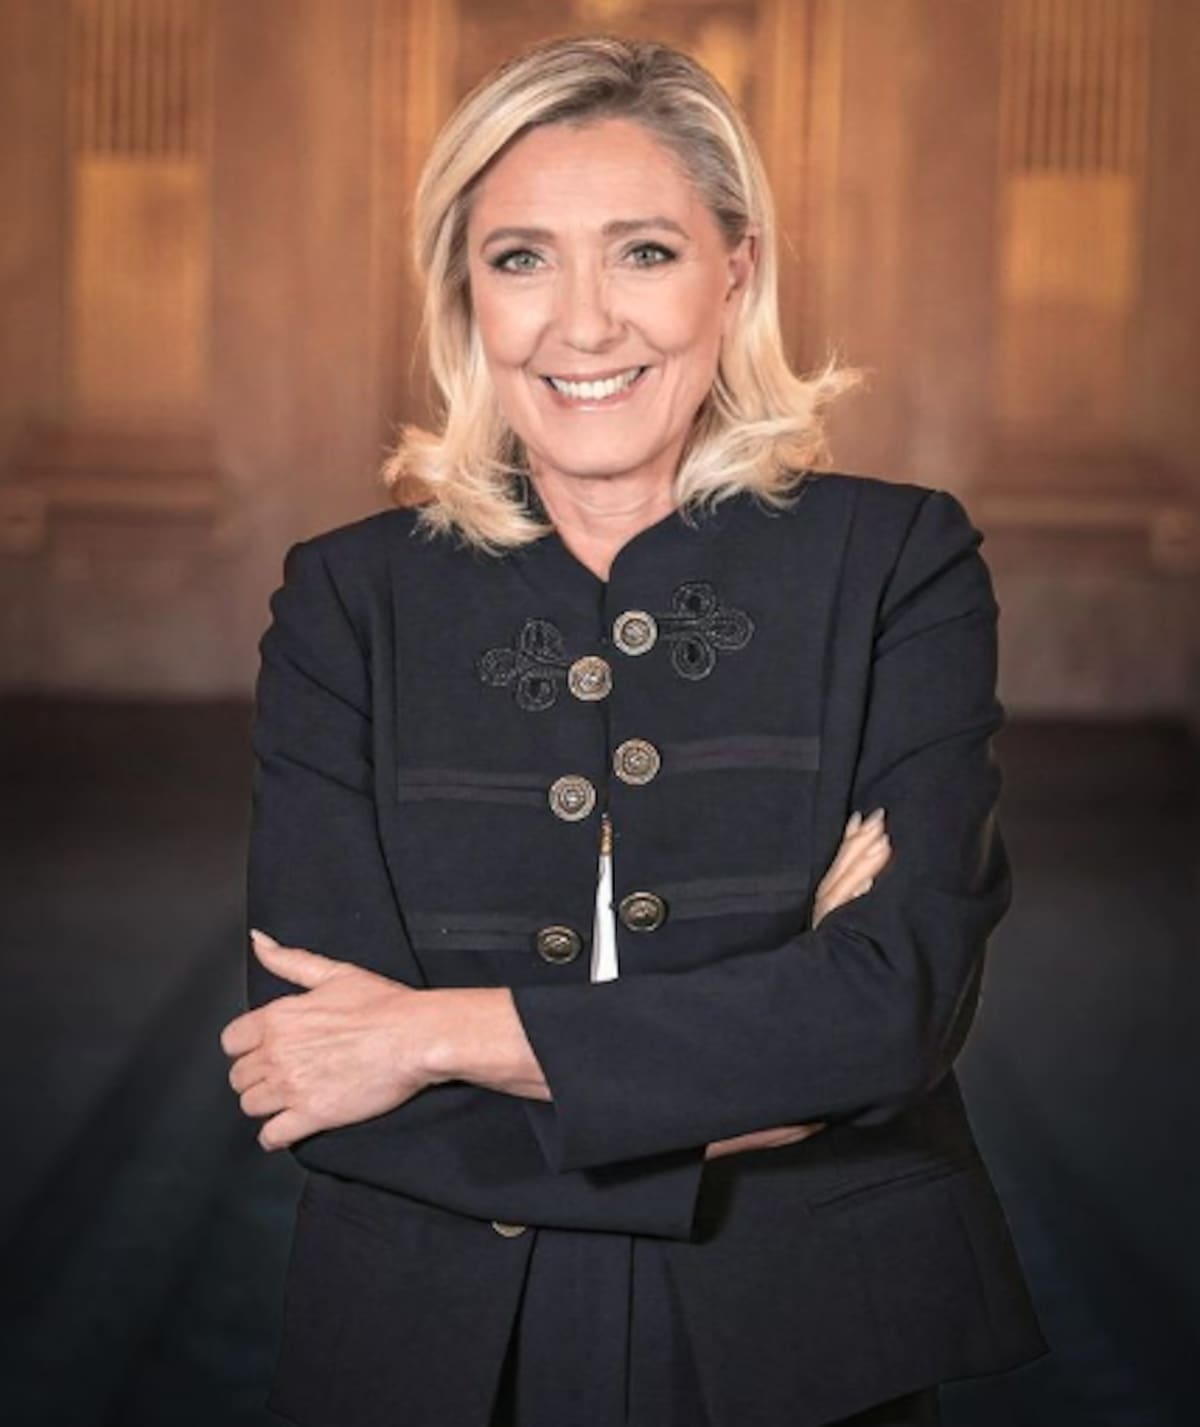 Marin Le Pen expulsó del partido a su propio padre en 2015. | Crédito: Instagram @marine_lepen